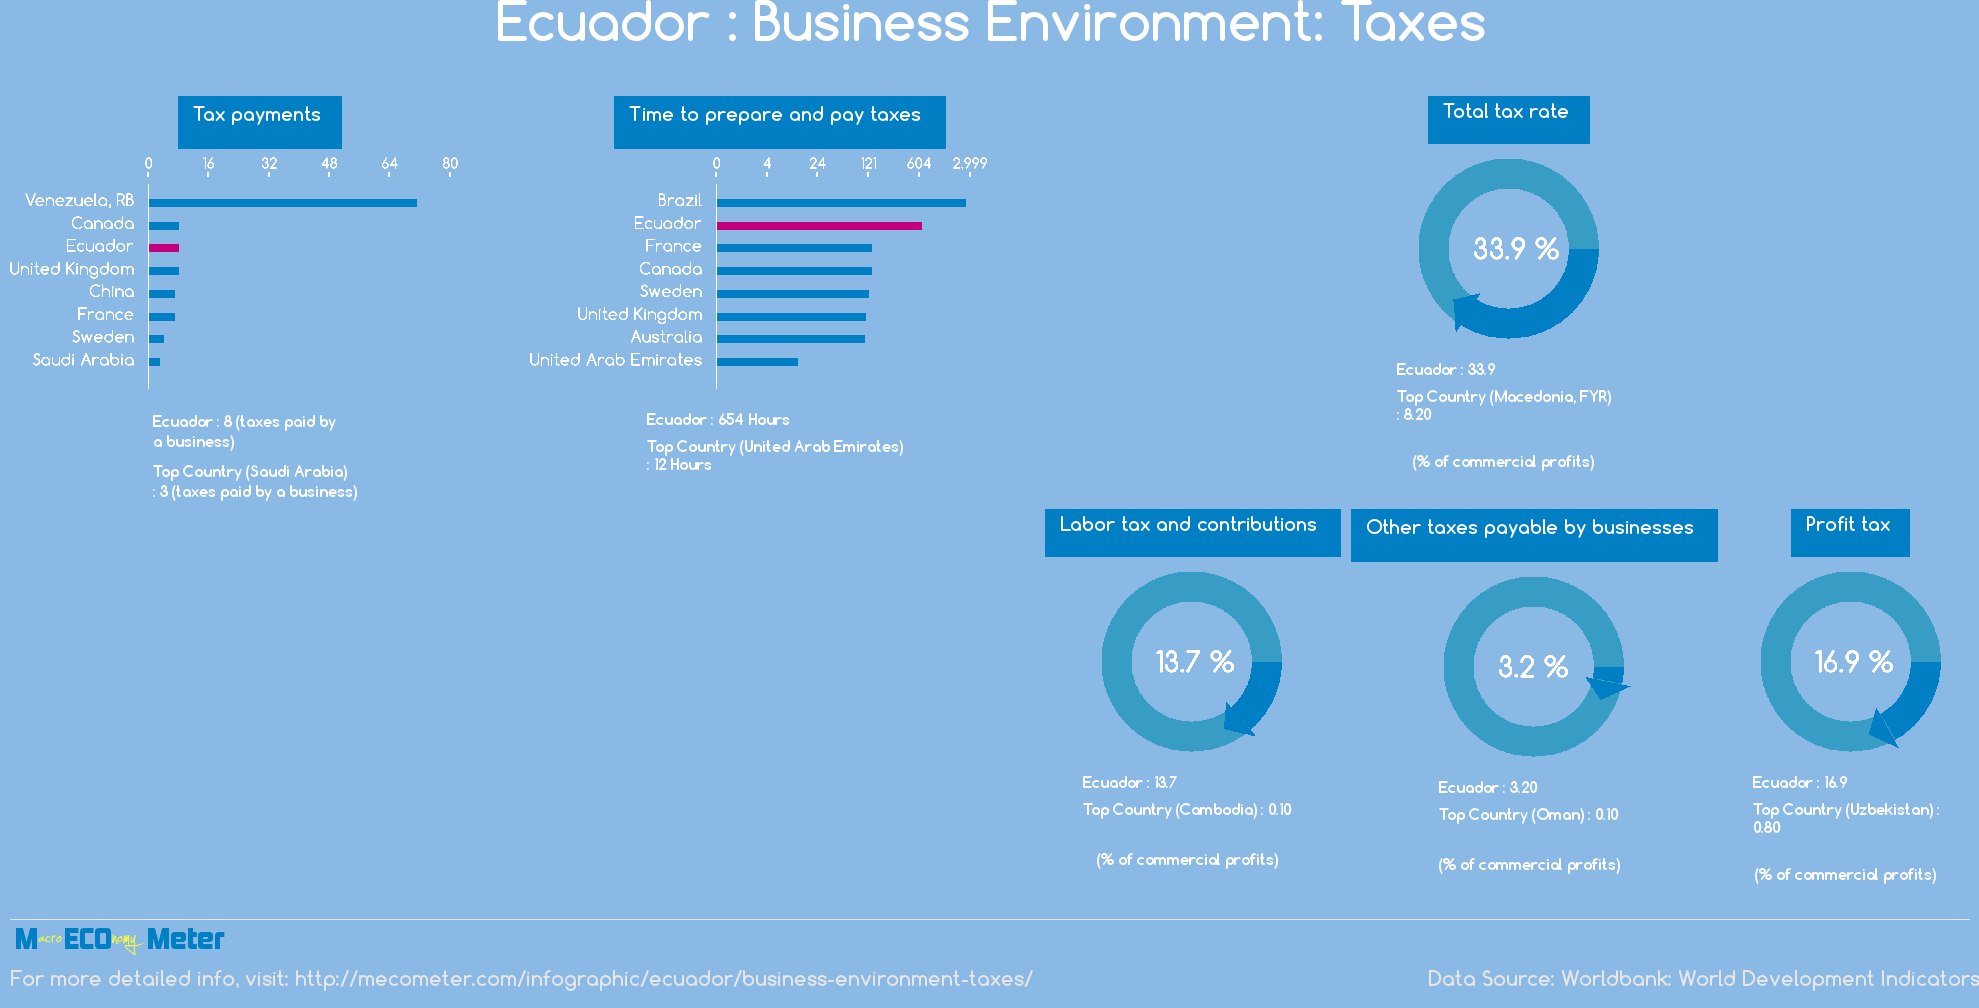 Ecuador : Business Environment: Taxes